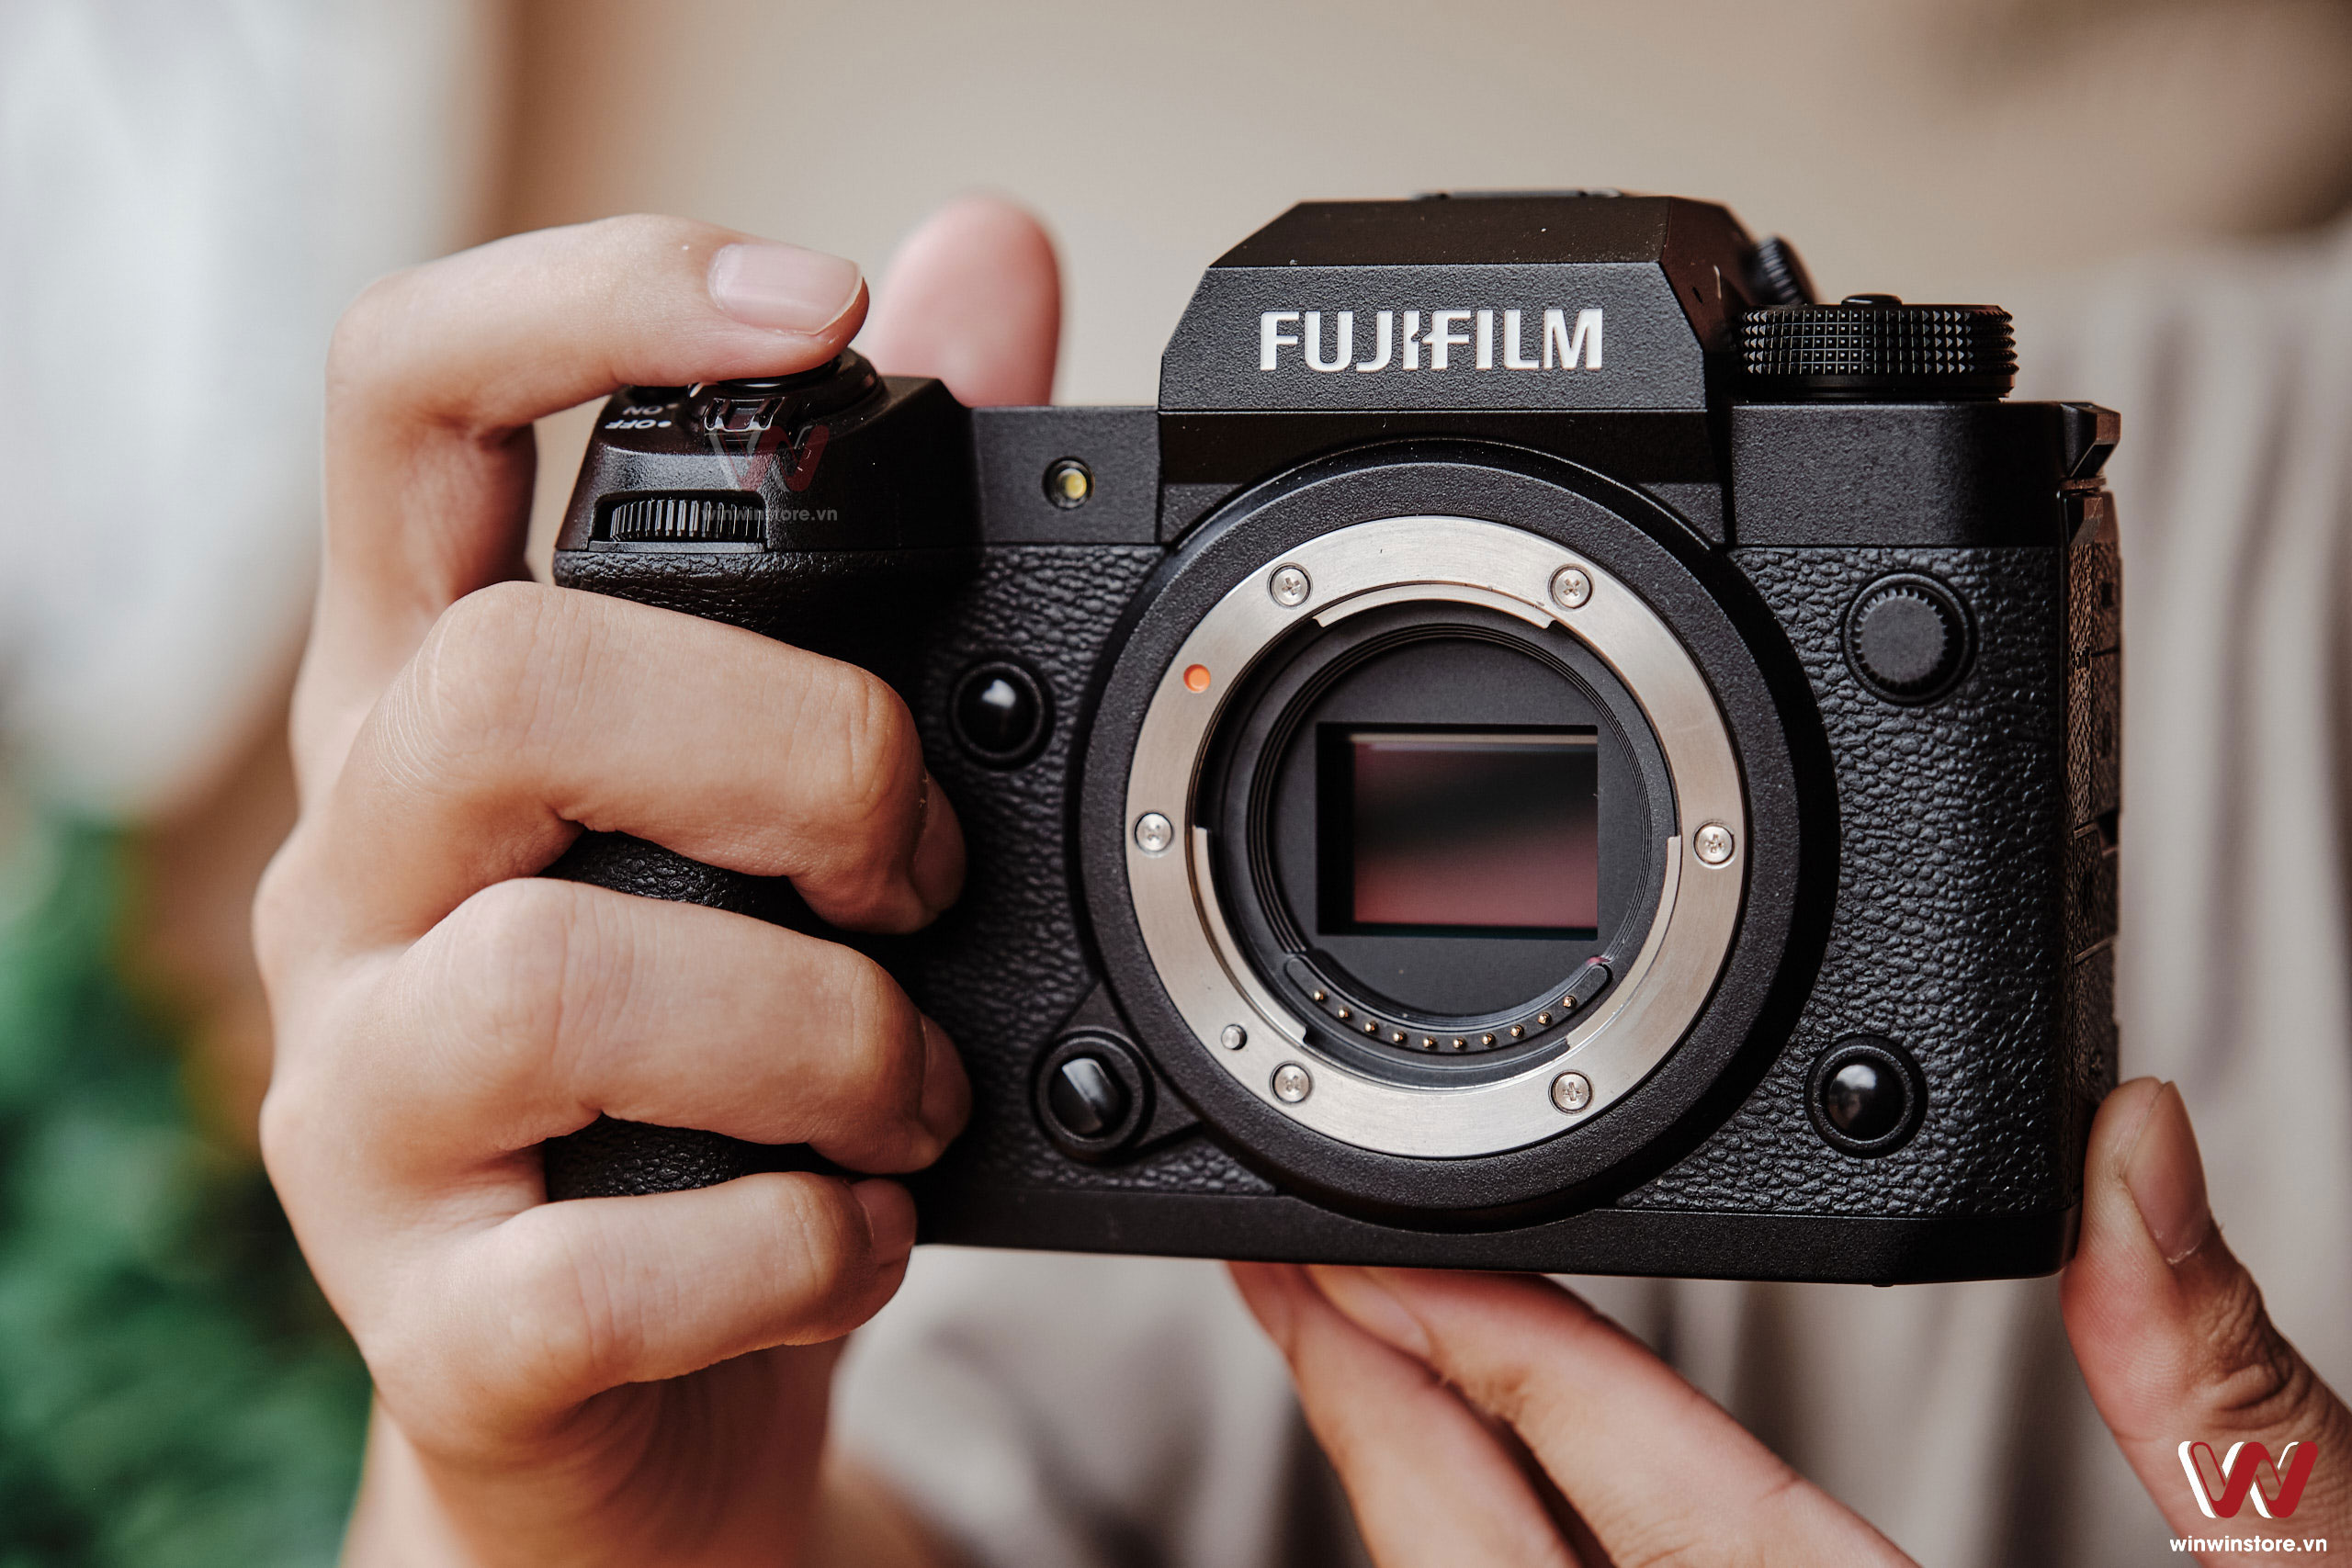 ĐÓN GIÁNG SINH - RINH DEAL ĐỈNH, khuyến mãi giảm giá loạt thiết bị từ Fujifilm trong tháng 12 này